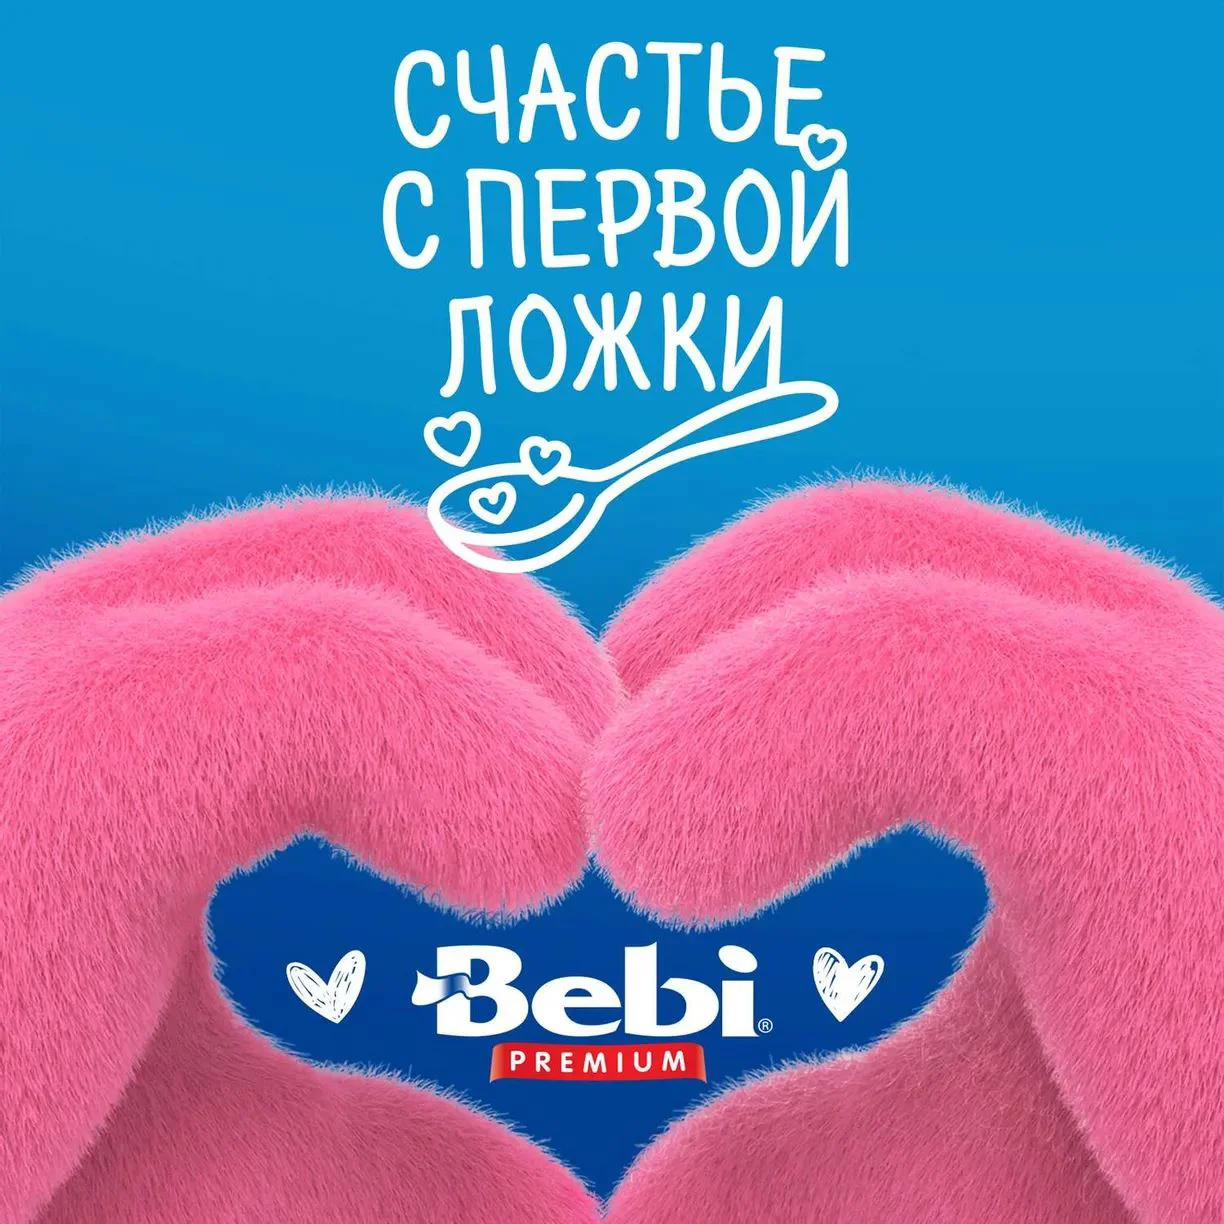 Каша безмолочная Bebi Premium овсяная (5+мес), 200г